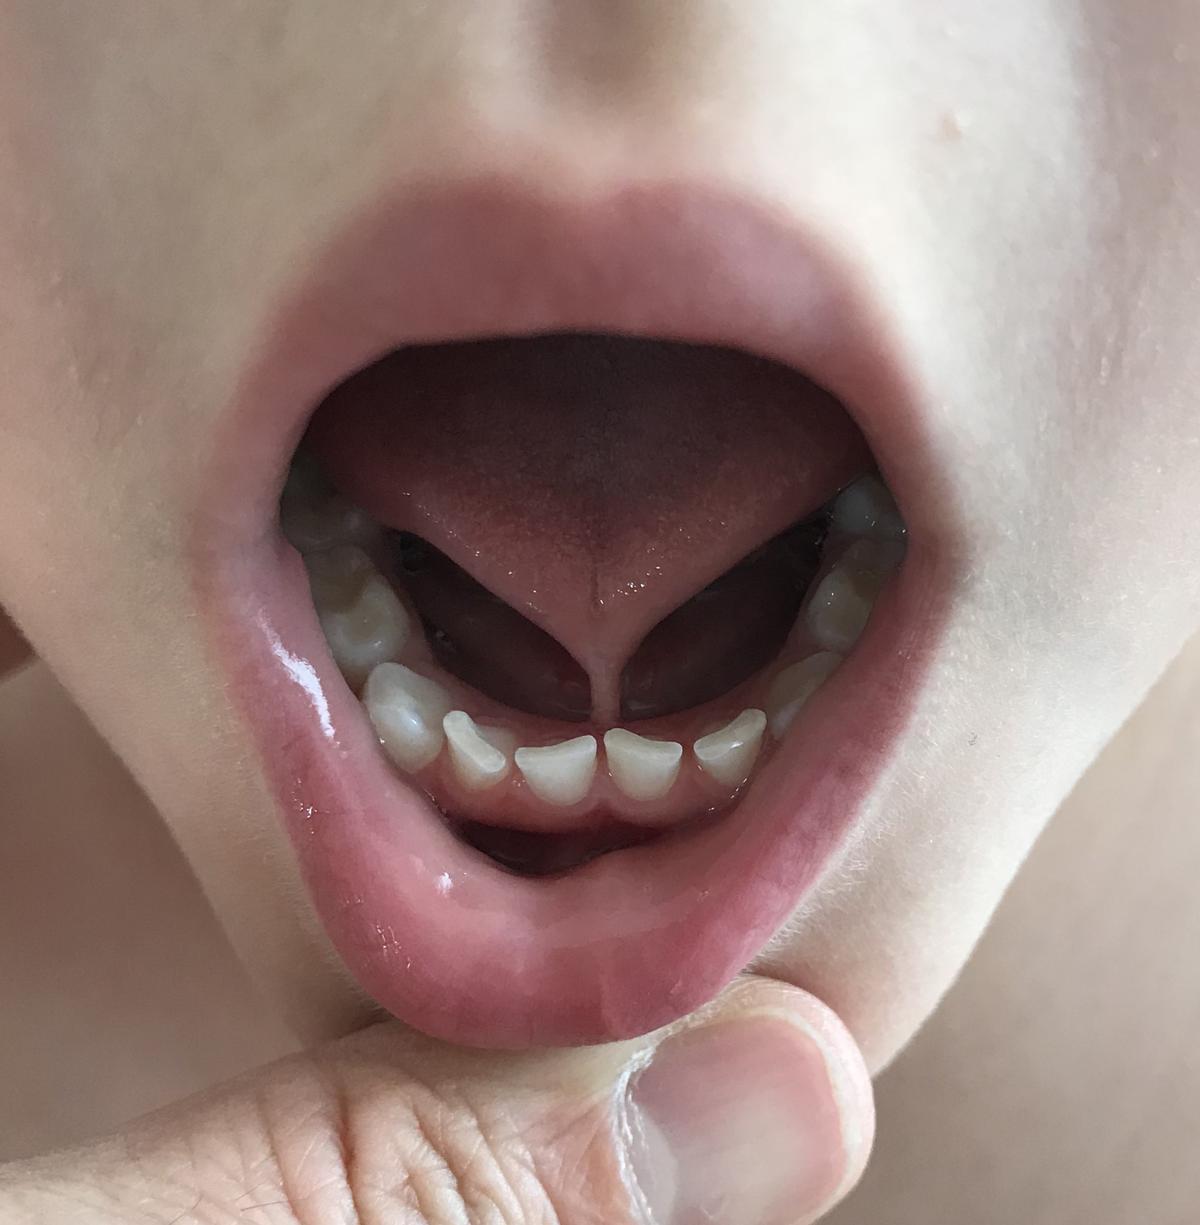 Anquiloglosia (lengua trabada) por frenillo lingual corto, en un niño de 4 años.